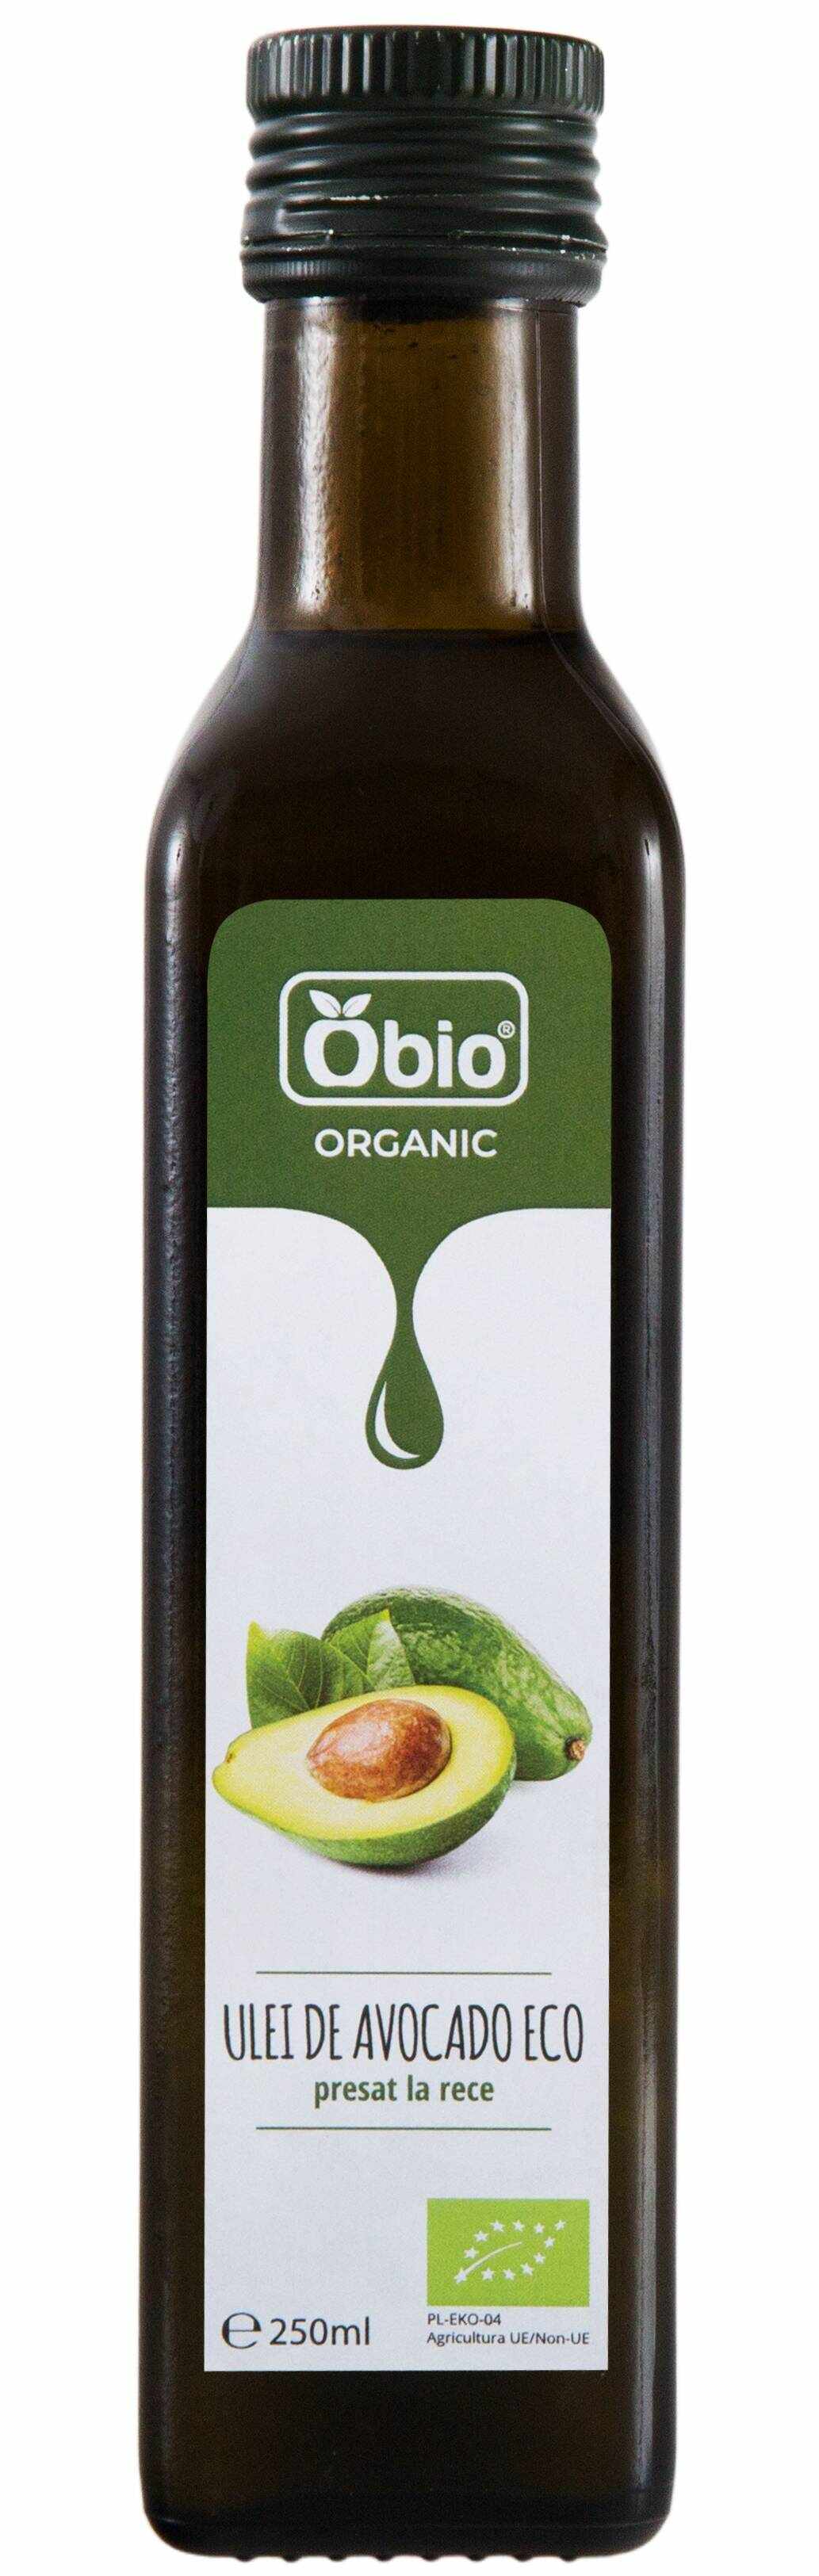 Ulei de avocado, eco-bio, 250ml Obio